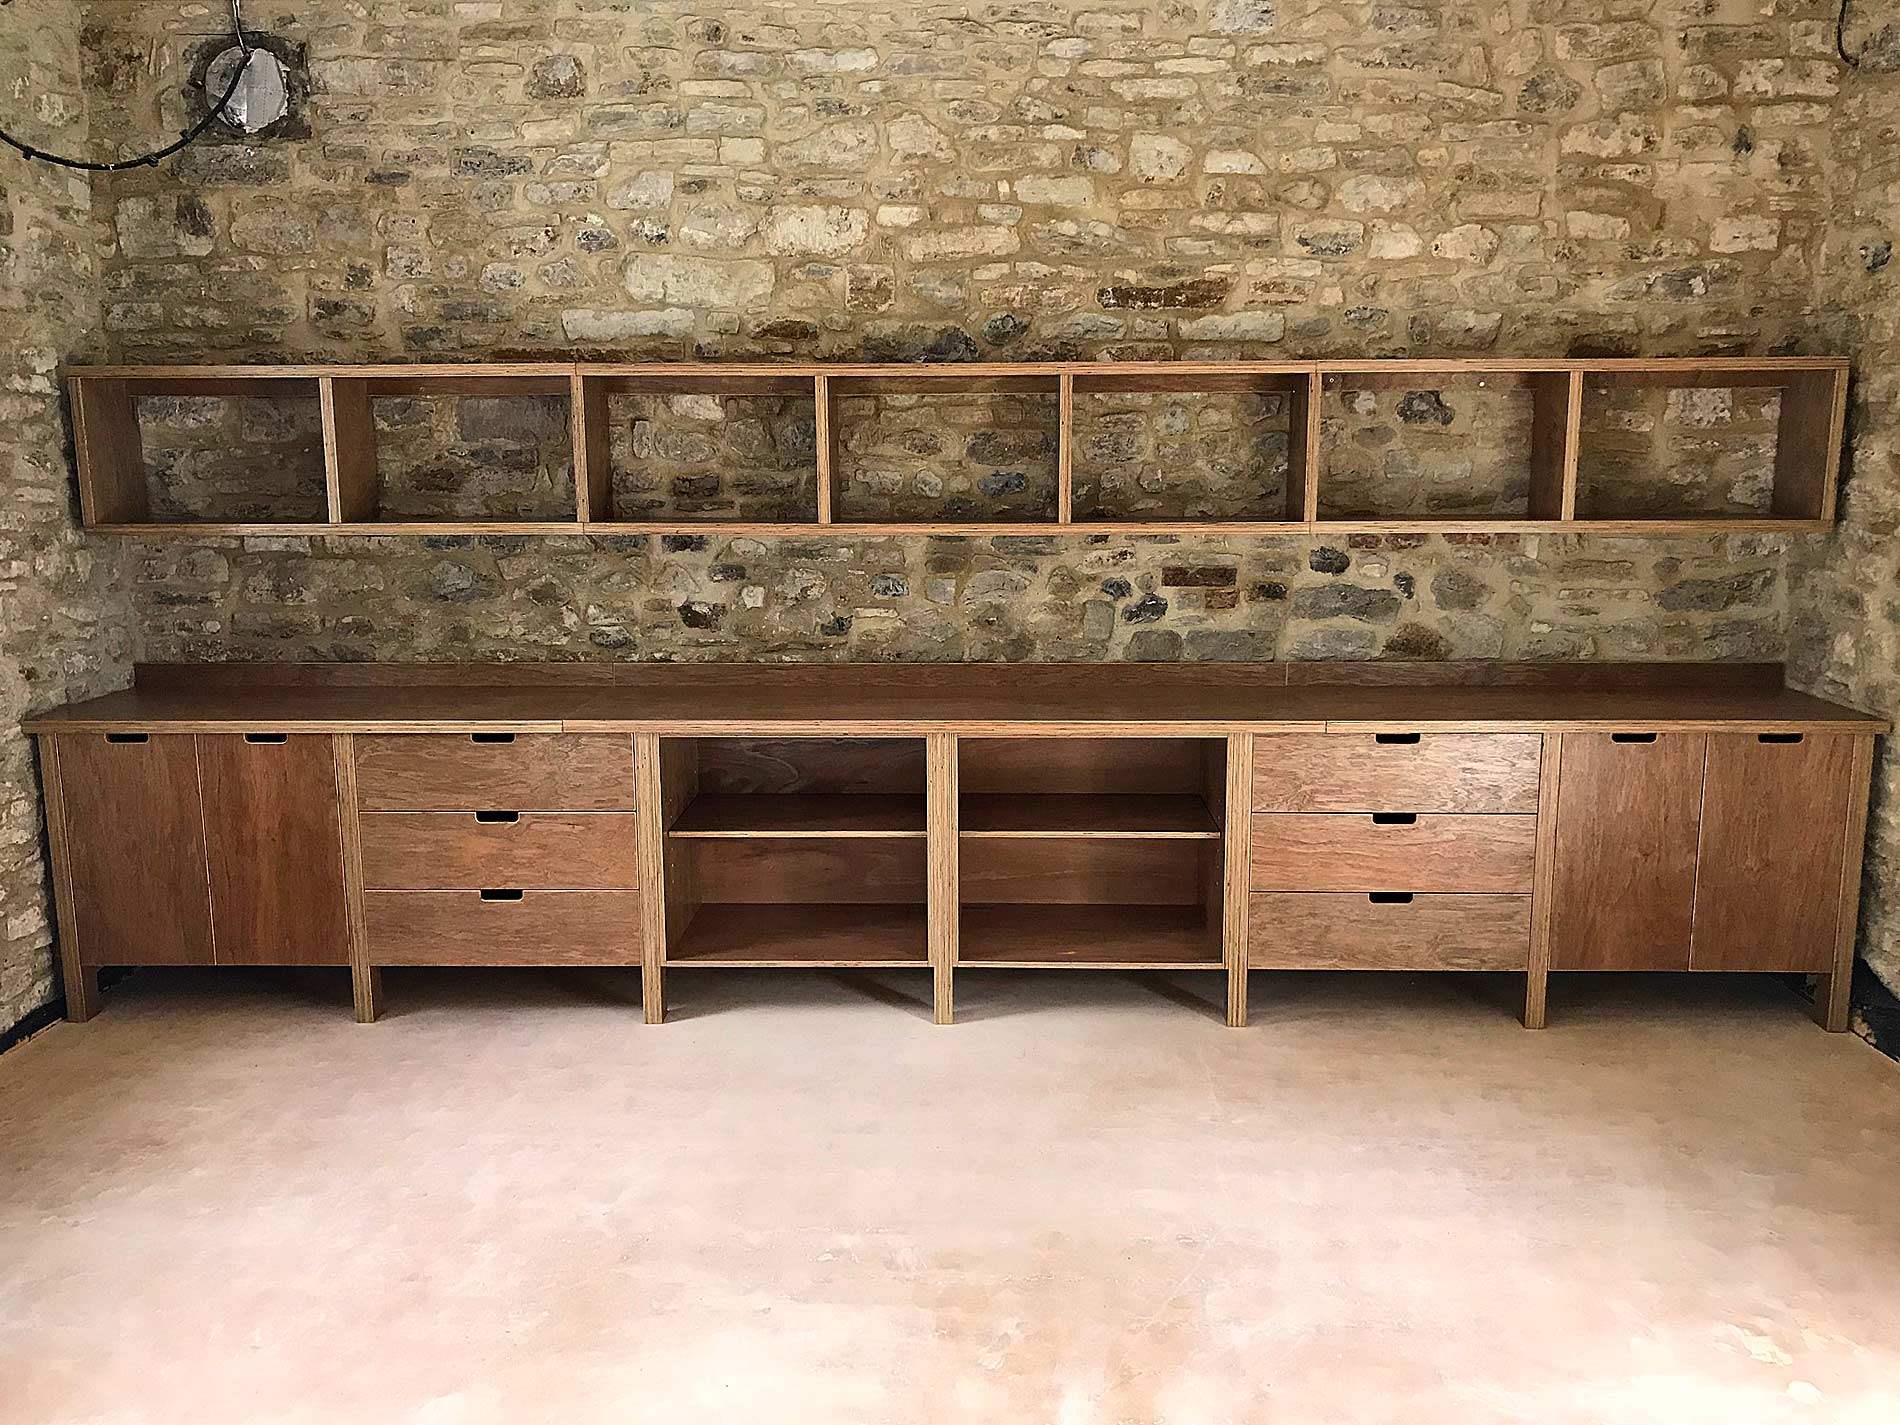 Jake Reilly Furniture – Storage and Displays – Dream garage